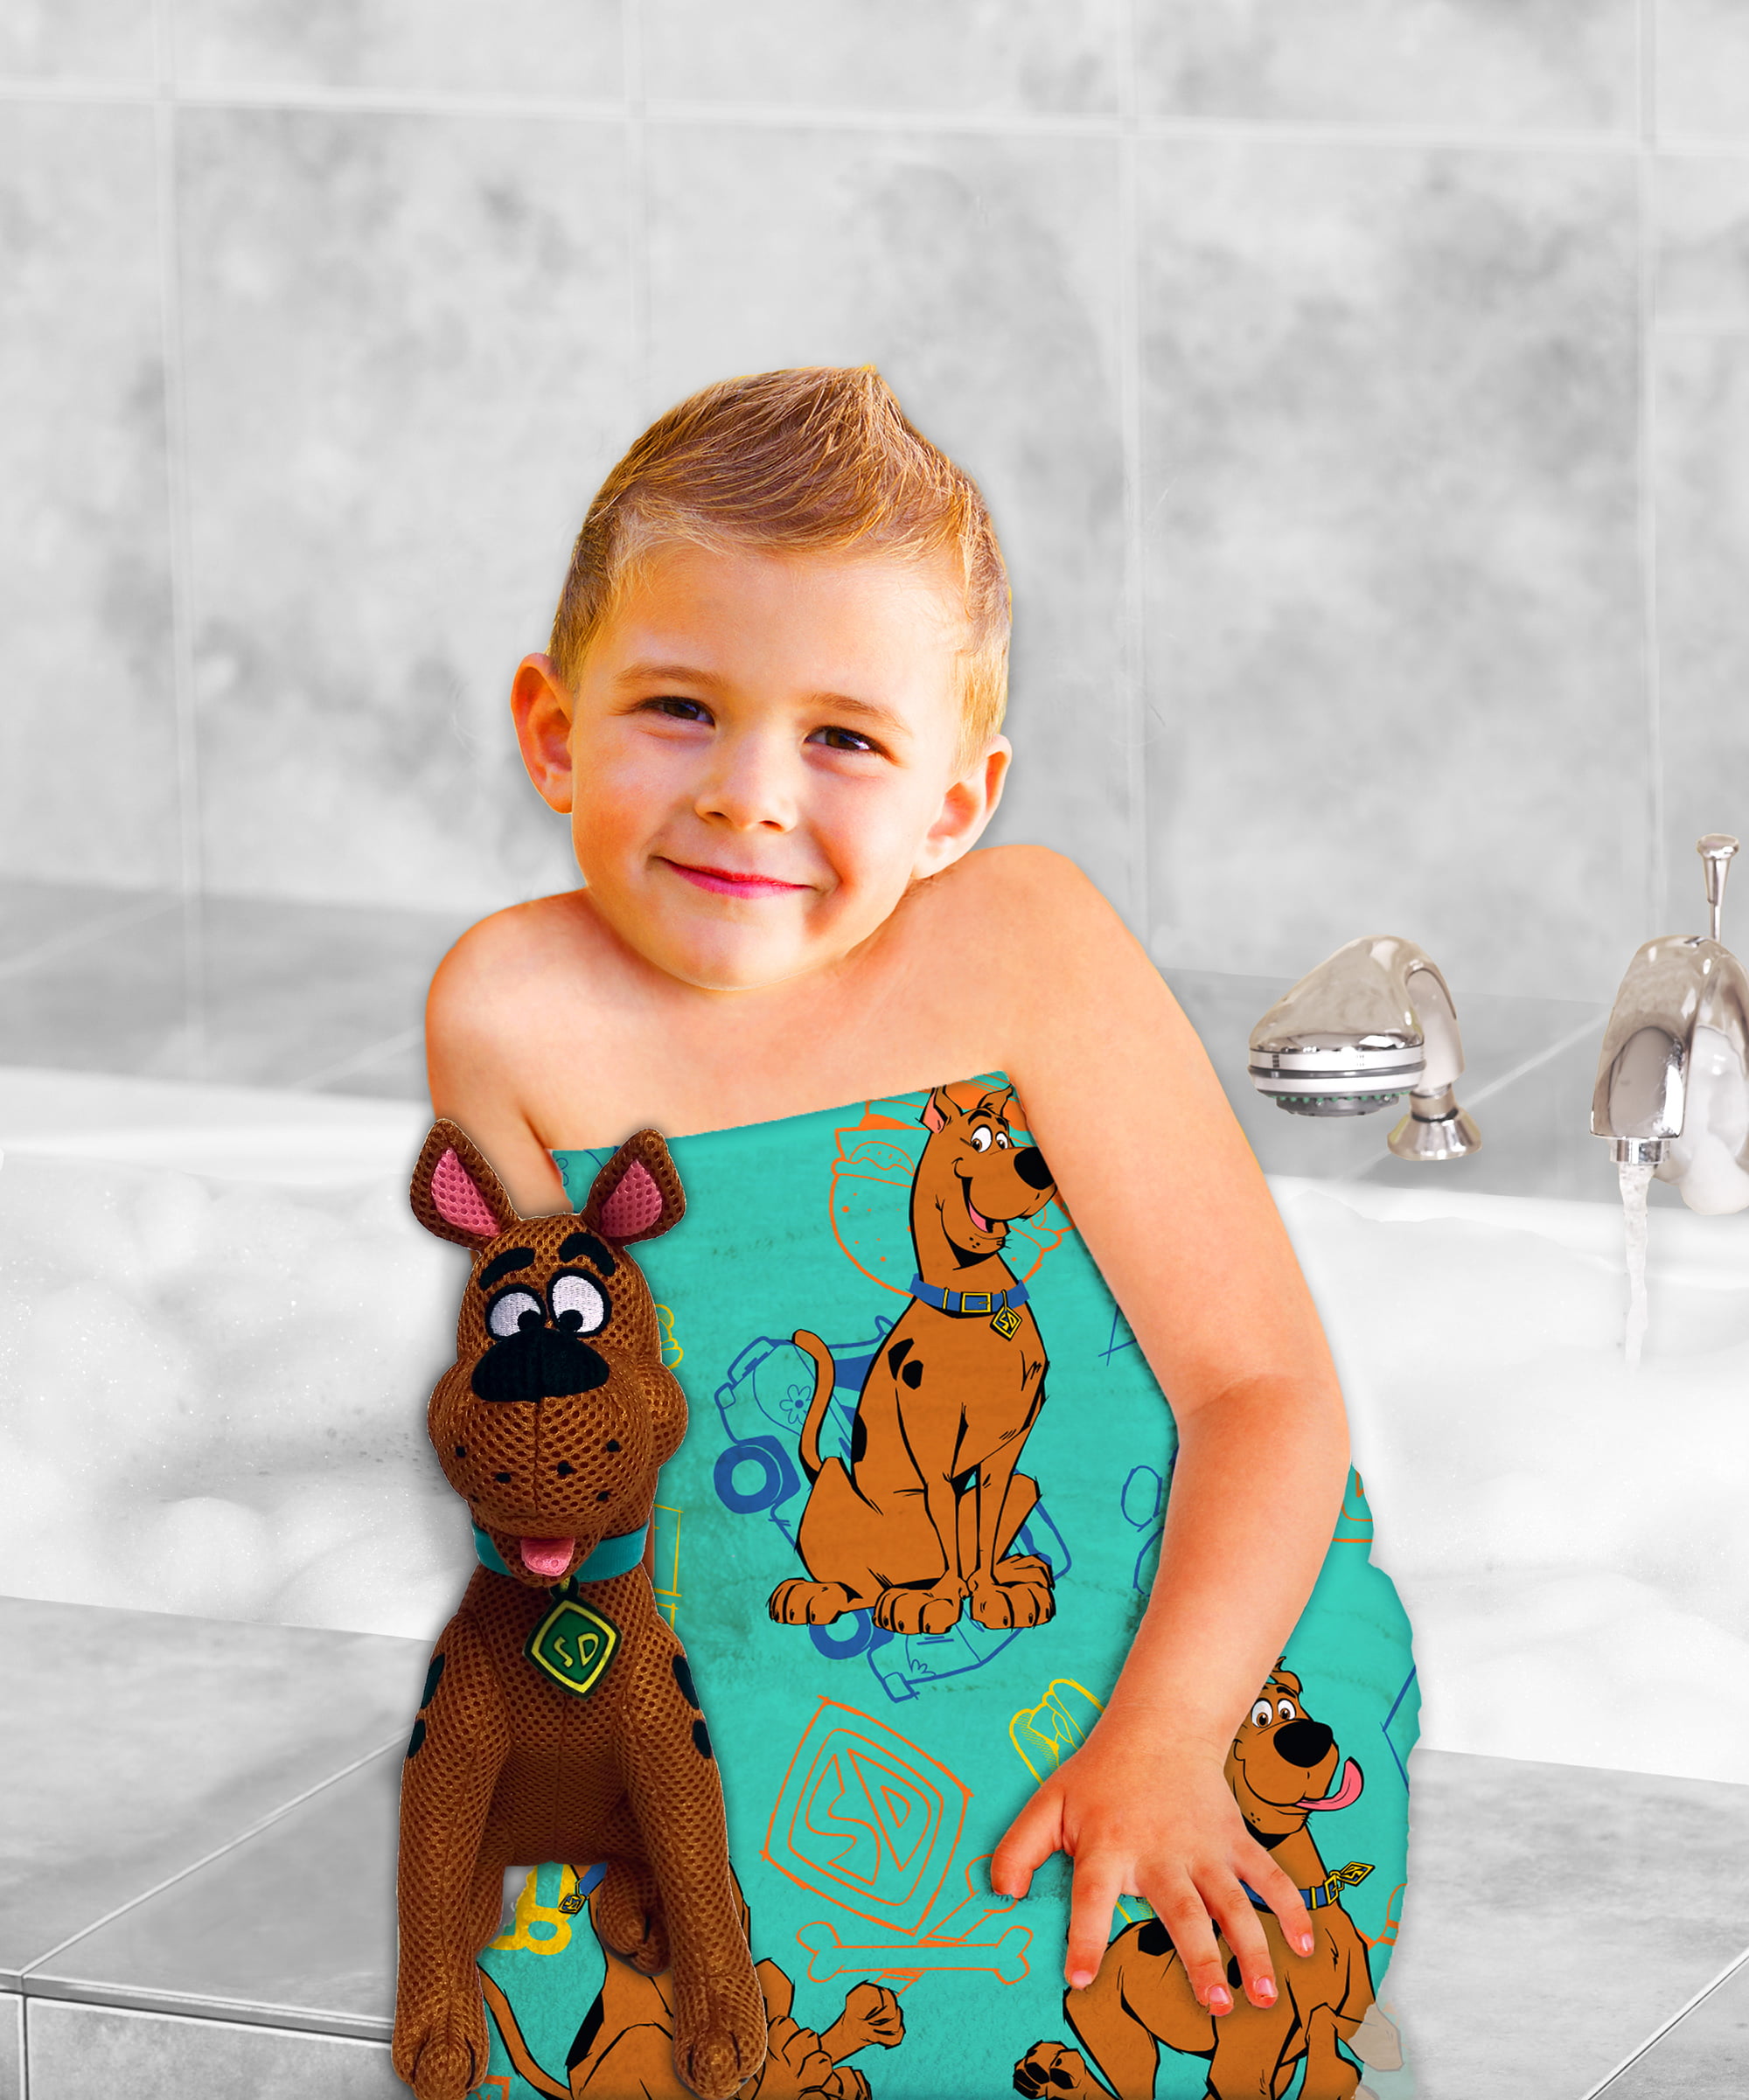 Scoob 2 Piece Bath/Pool Towel Scrubby Set Scooby Doo Tub Toy & Matching Towel 